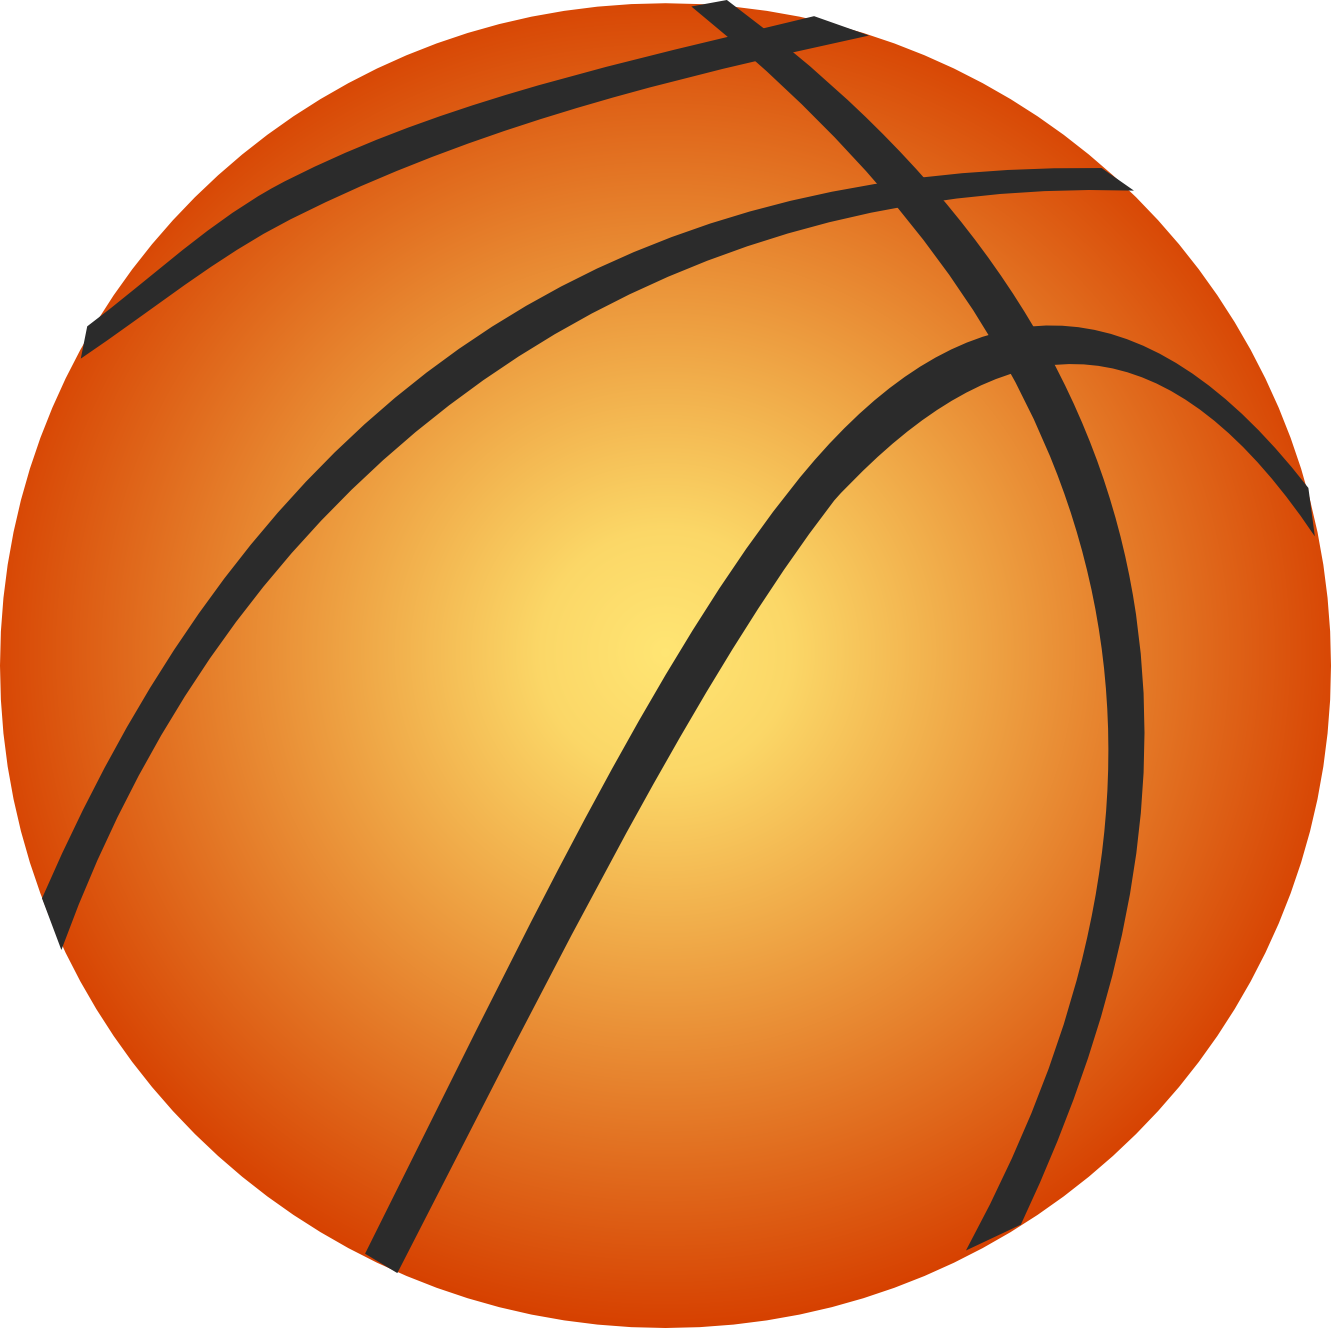 Image de PNG de basketball de haute qualité